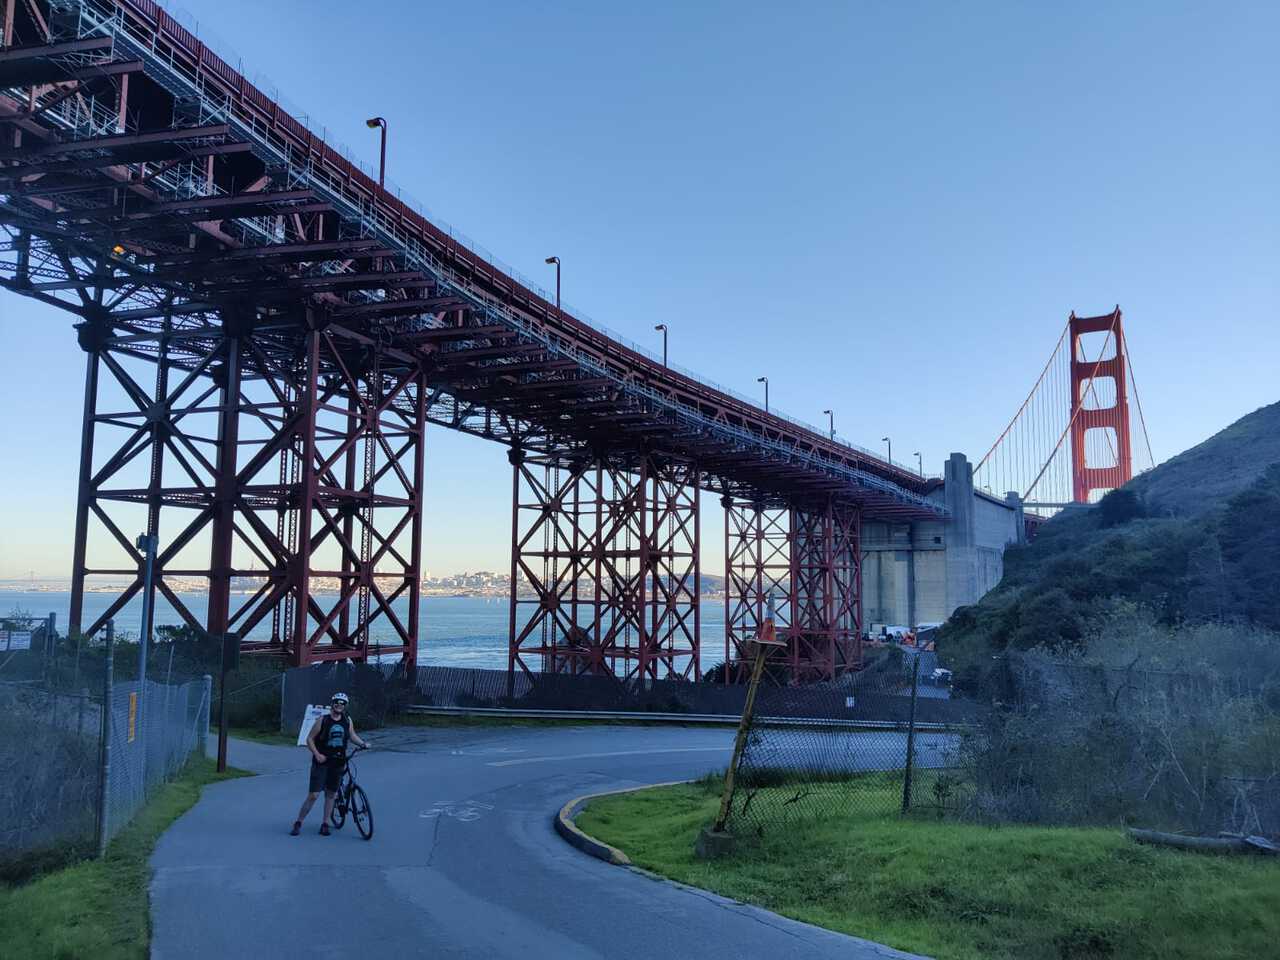 Lucy under the Golden Gate Bridge